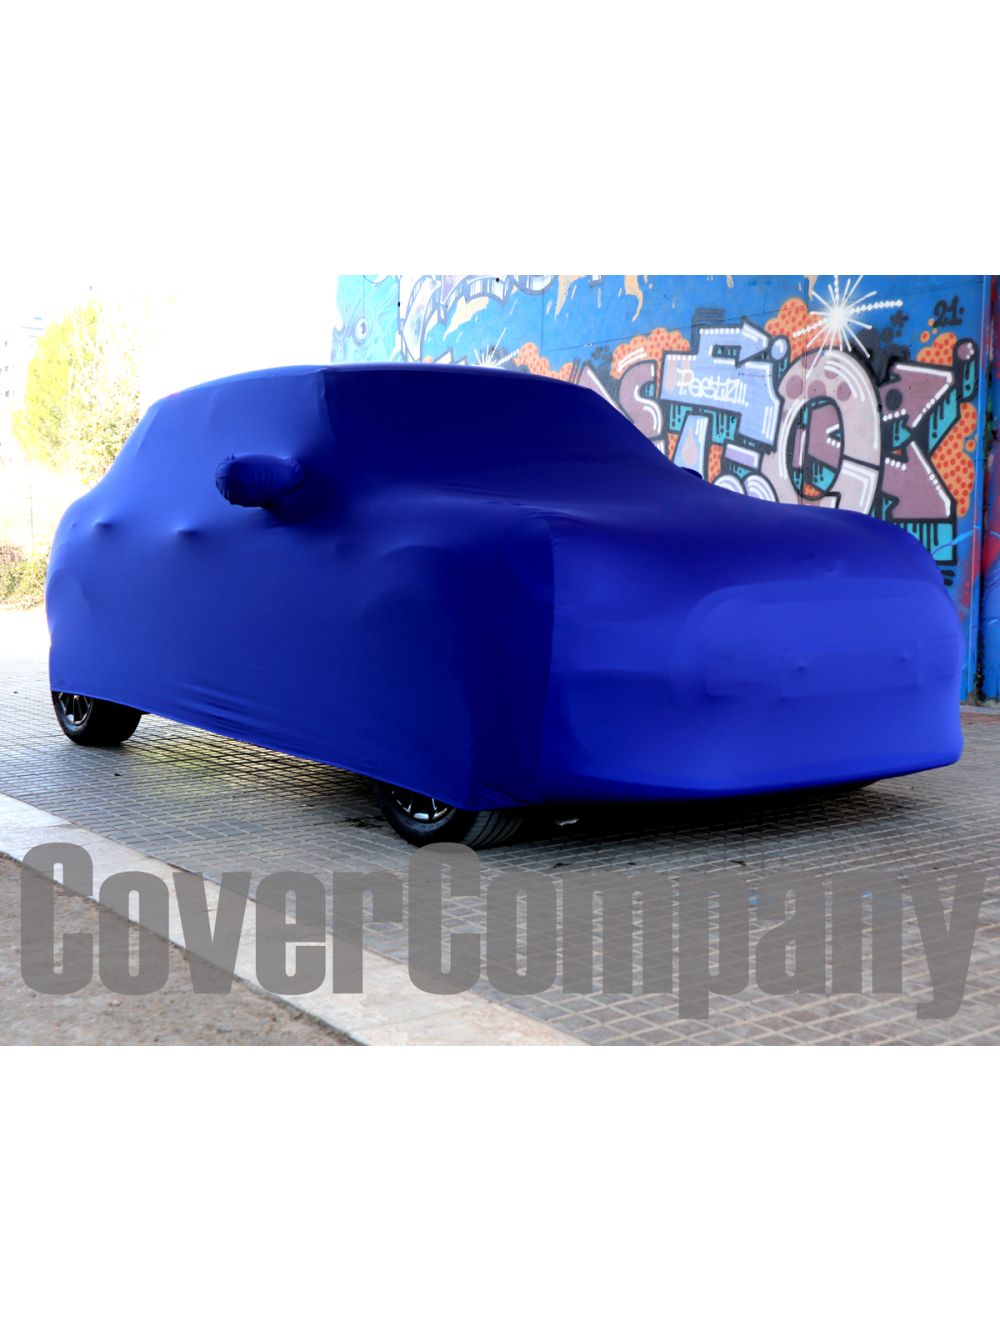 Housse de protection voiture (usage intérieur) - NMS3296 - pièces Austin Mini  Cooper - Nancy Mini Shop